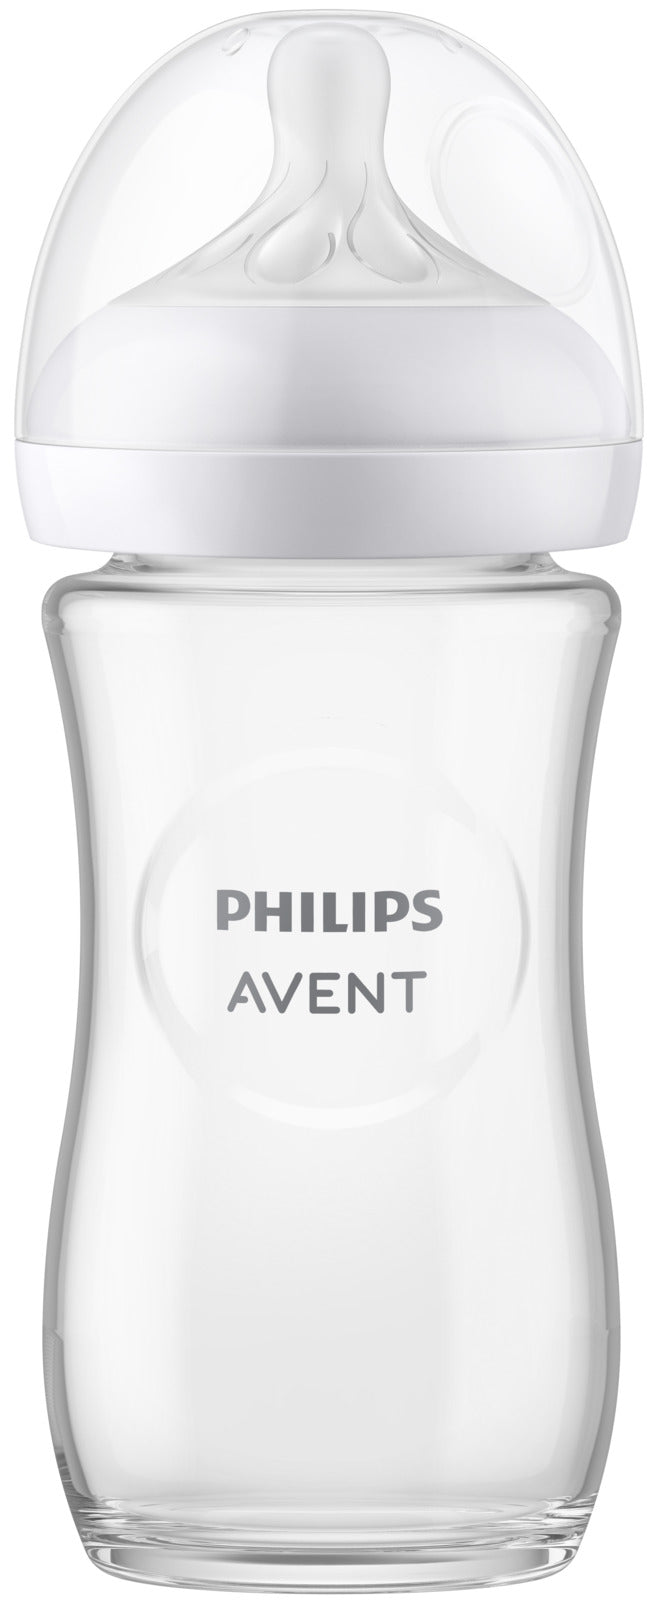 Avent: Natural Response Glass Bottle - 240ml (Single)